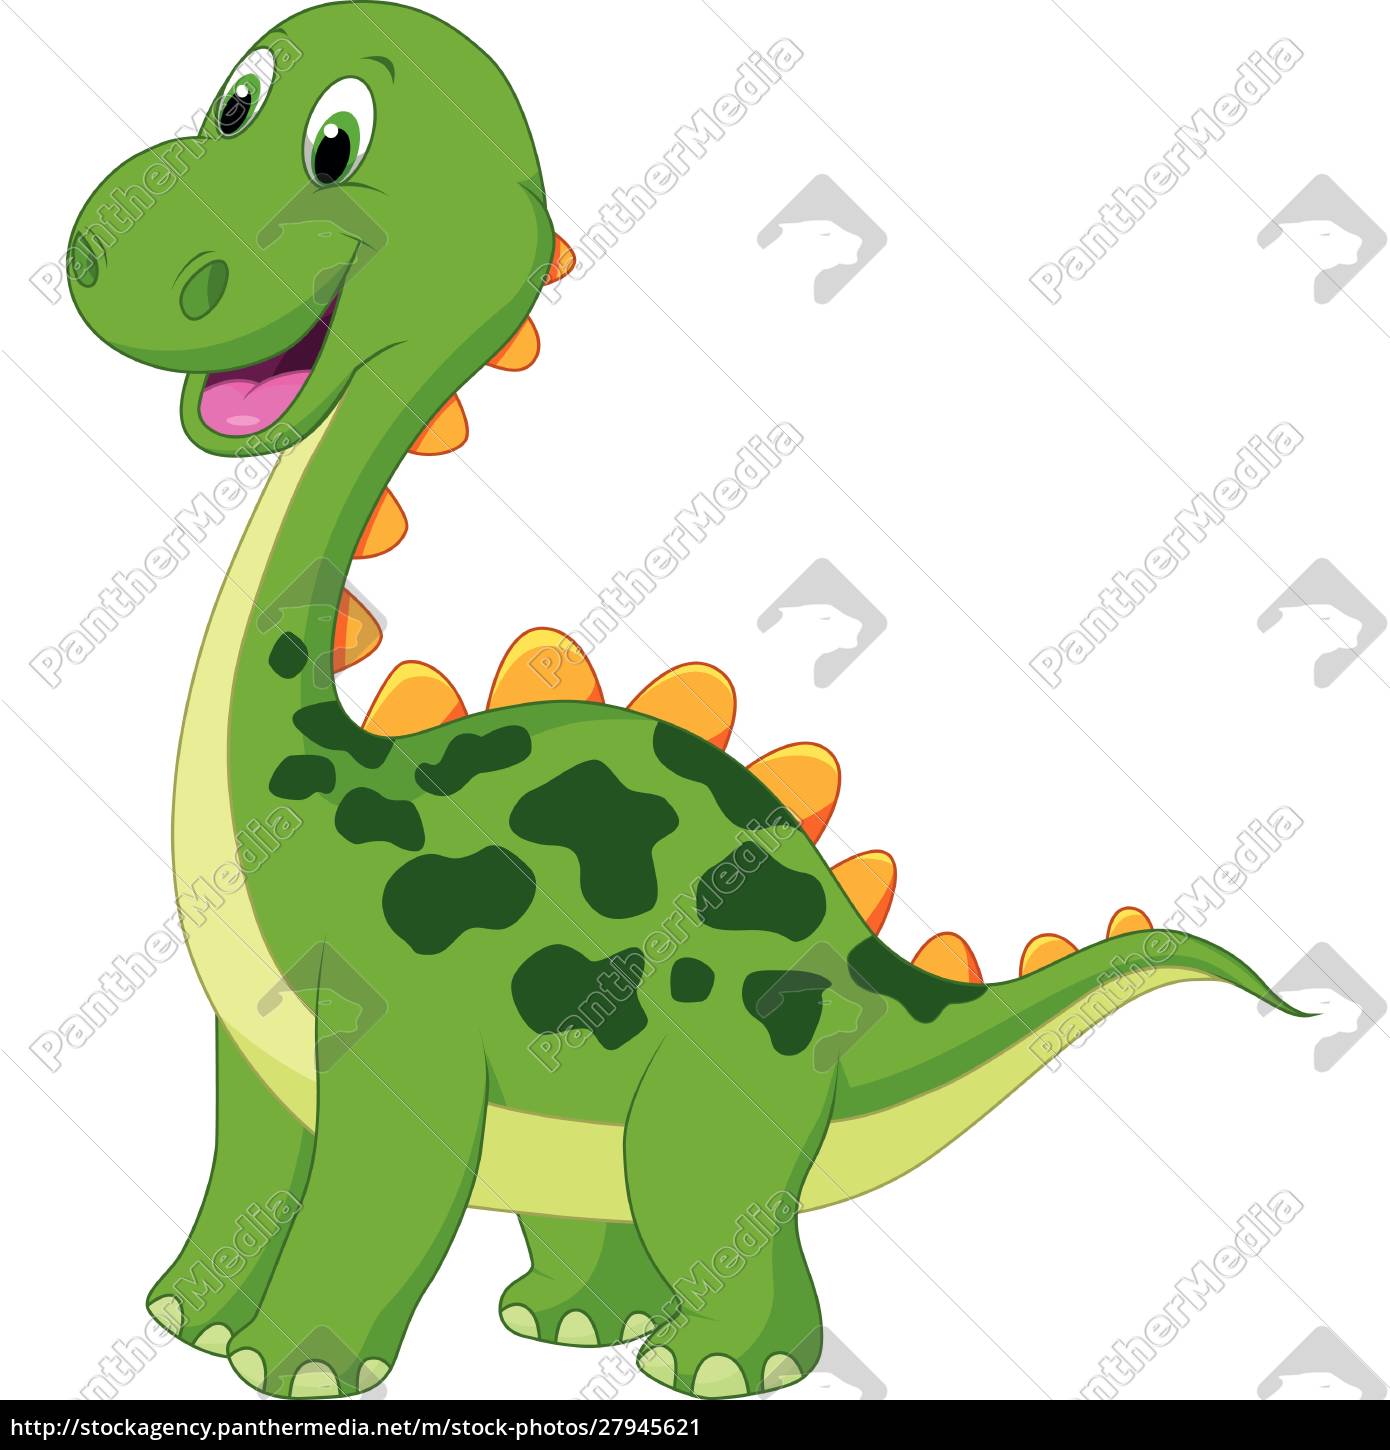 Desenho animado de dinossauro fofo - Stockphoto #27946155